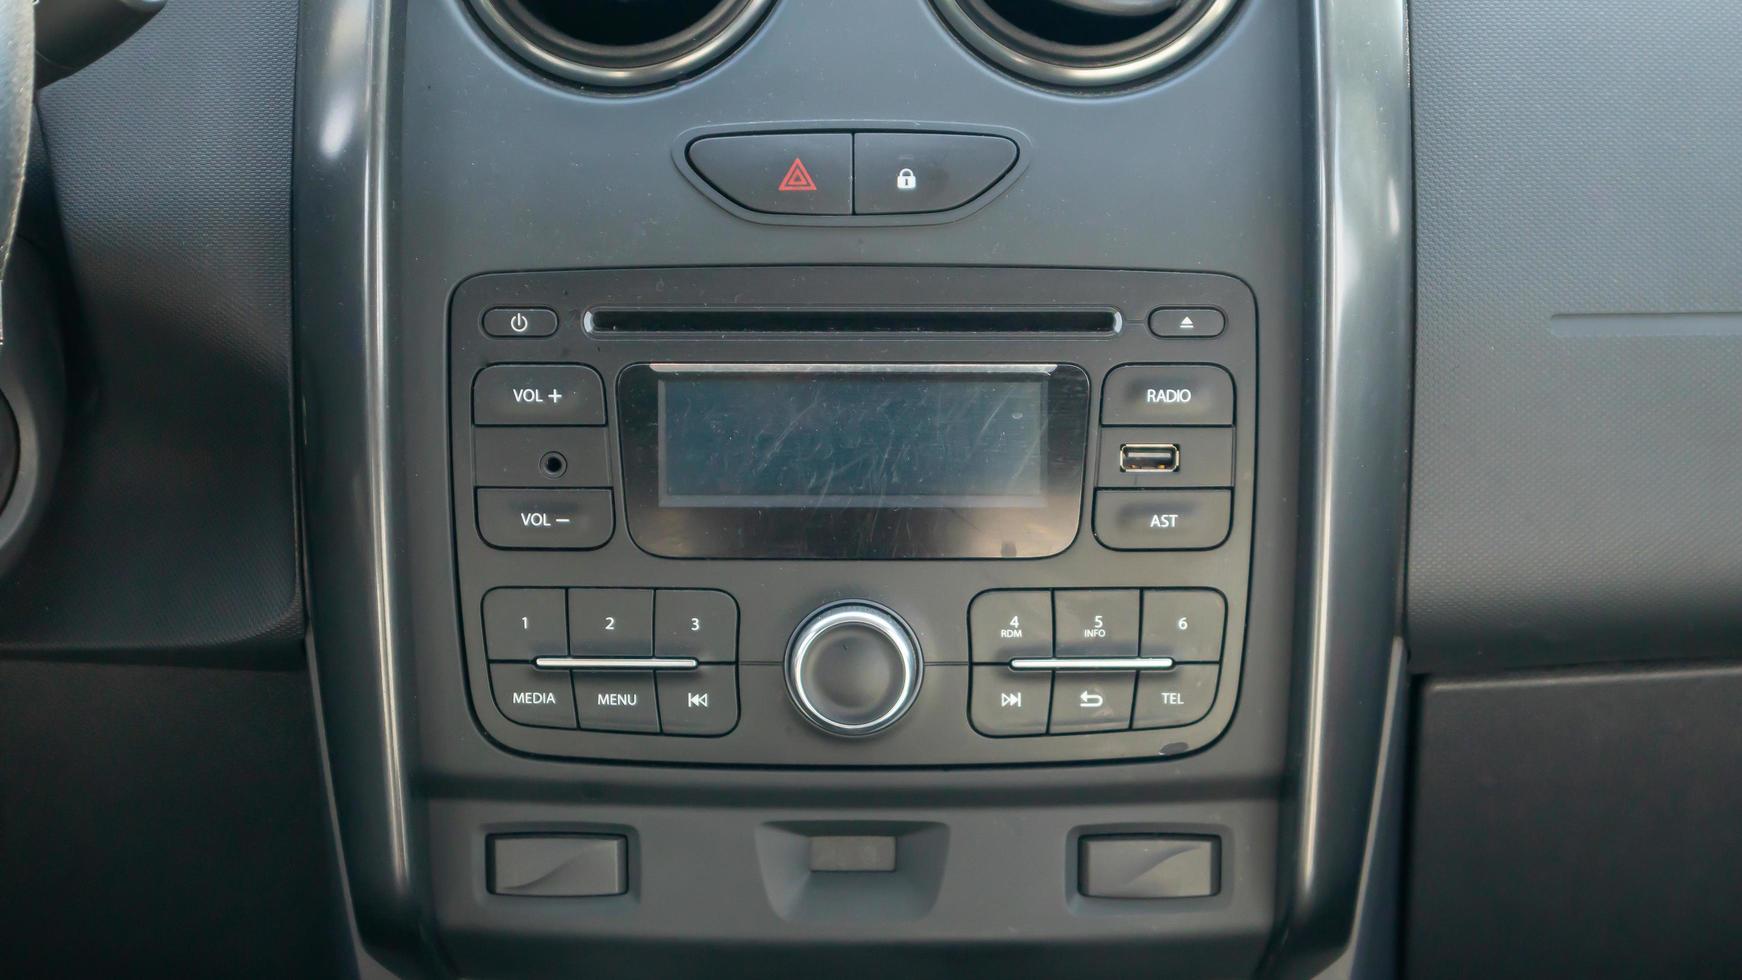 gevestigde multimedia in de auto. close-up van de head-unit en radio-ontvanger met display in de auto. stof en krassen zijn zichtbaar op het scherm van het apparaat. multimediasysteem. foto